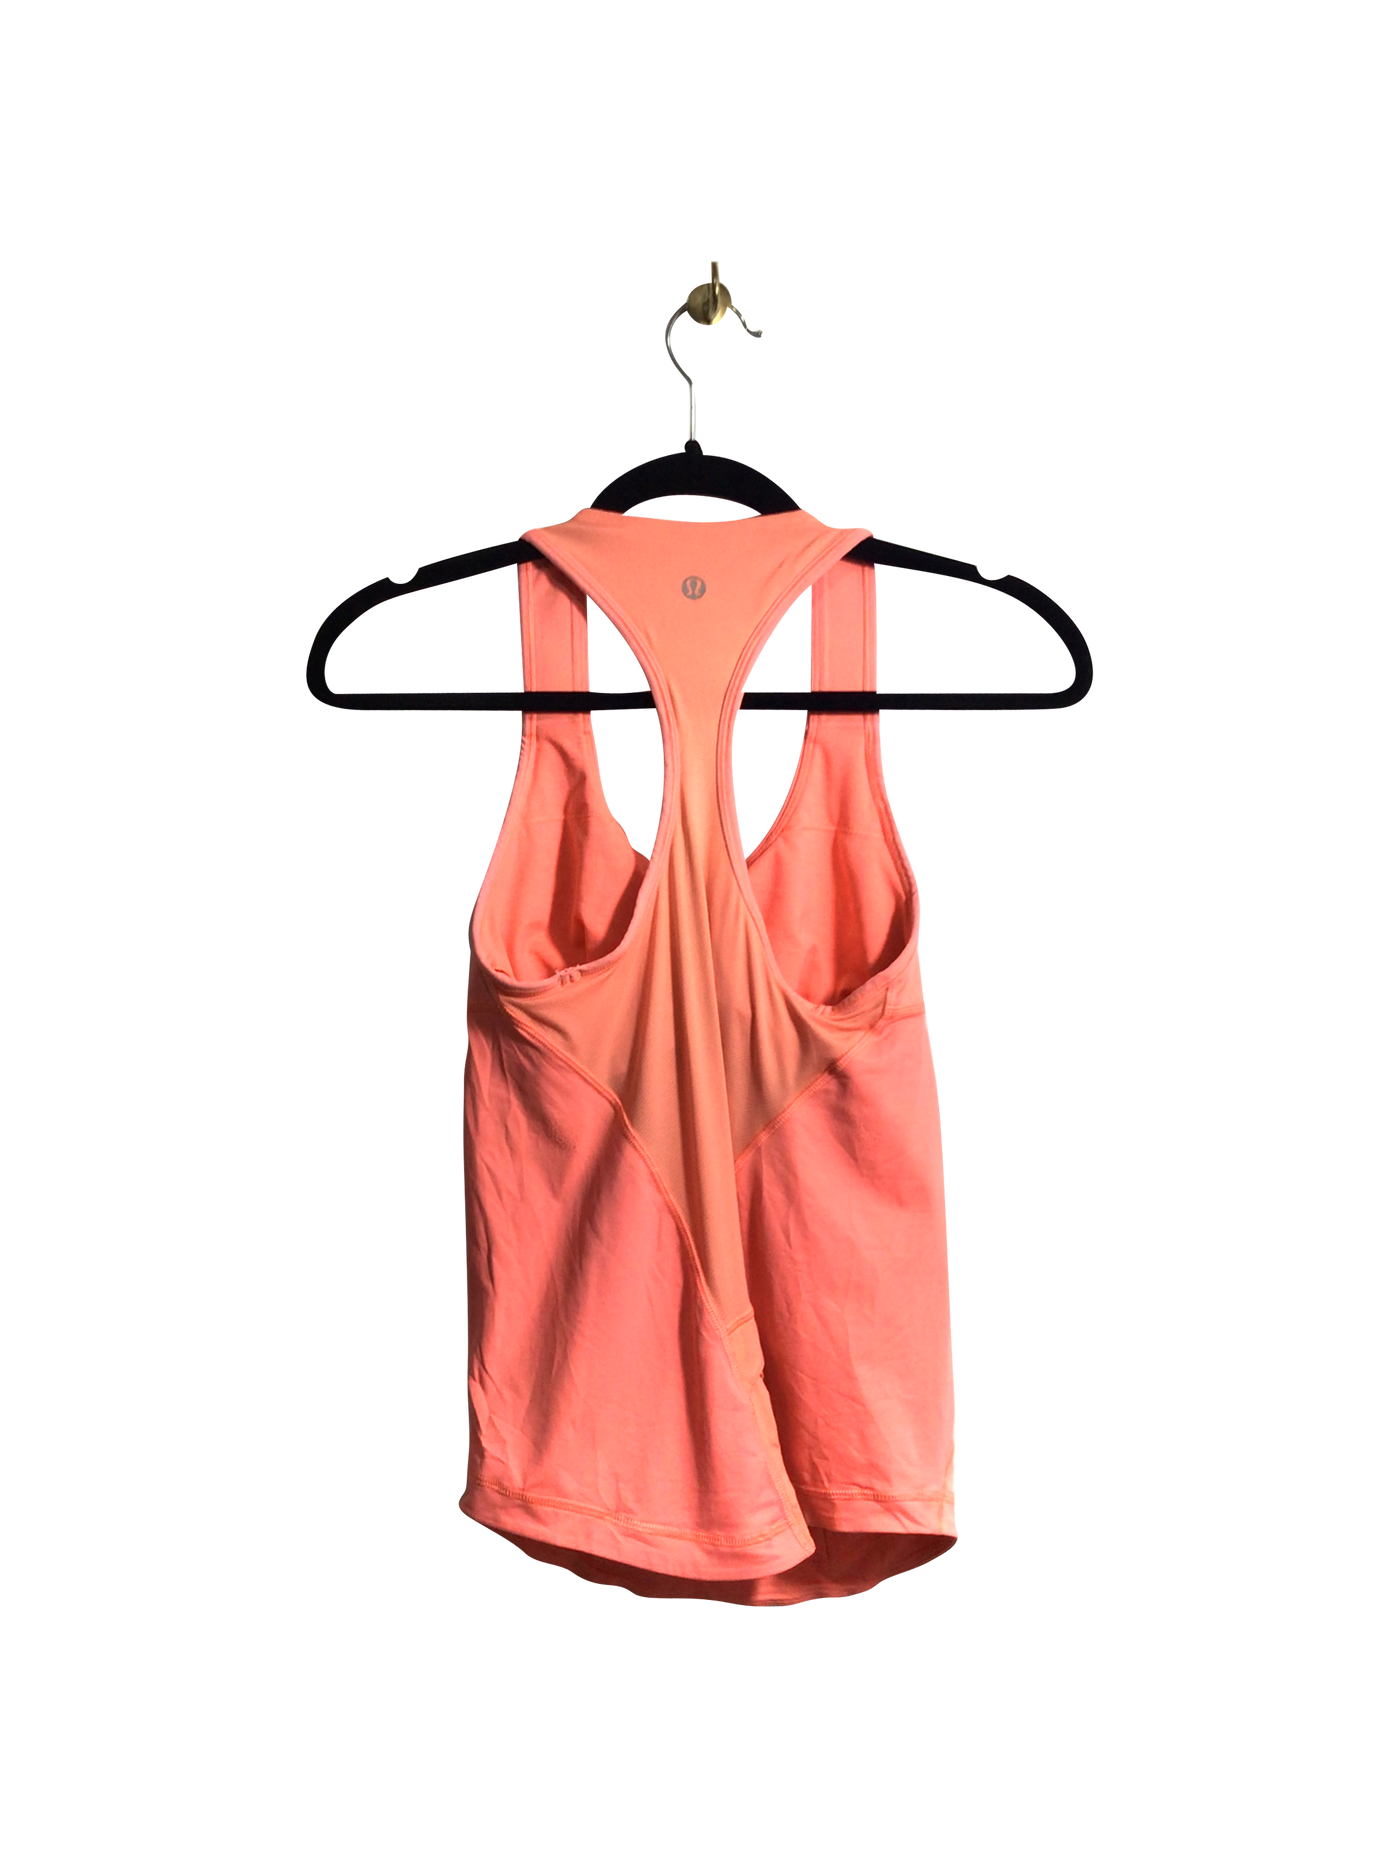 LULULEMON Women Activewear Tops Regular fit in Pink - Size S | 29 $ KOOP